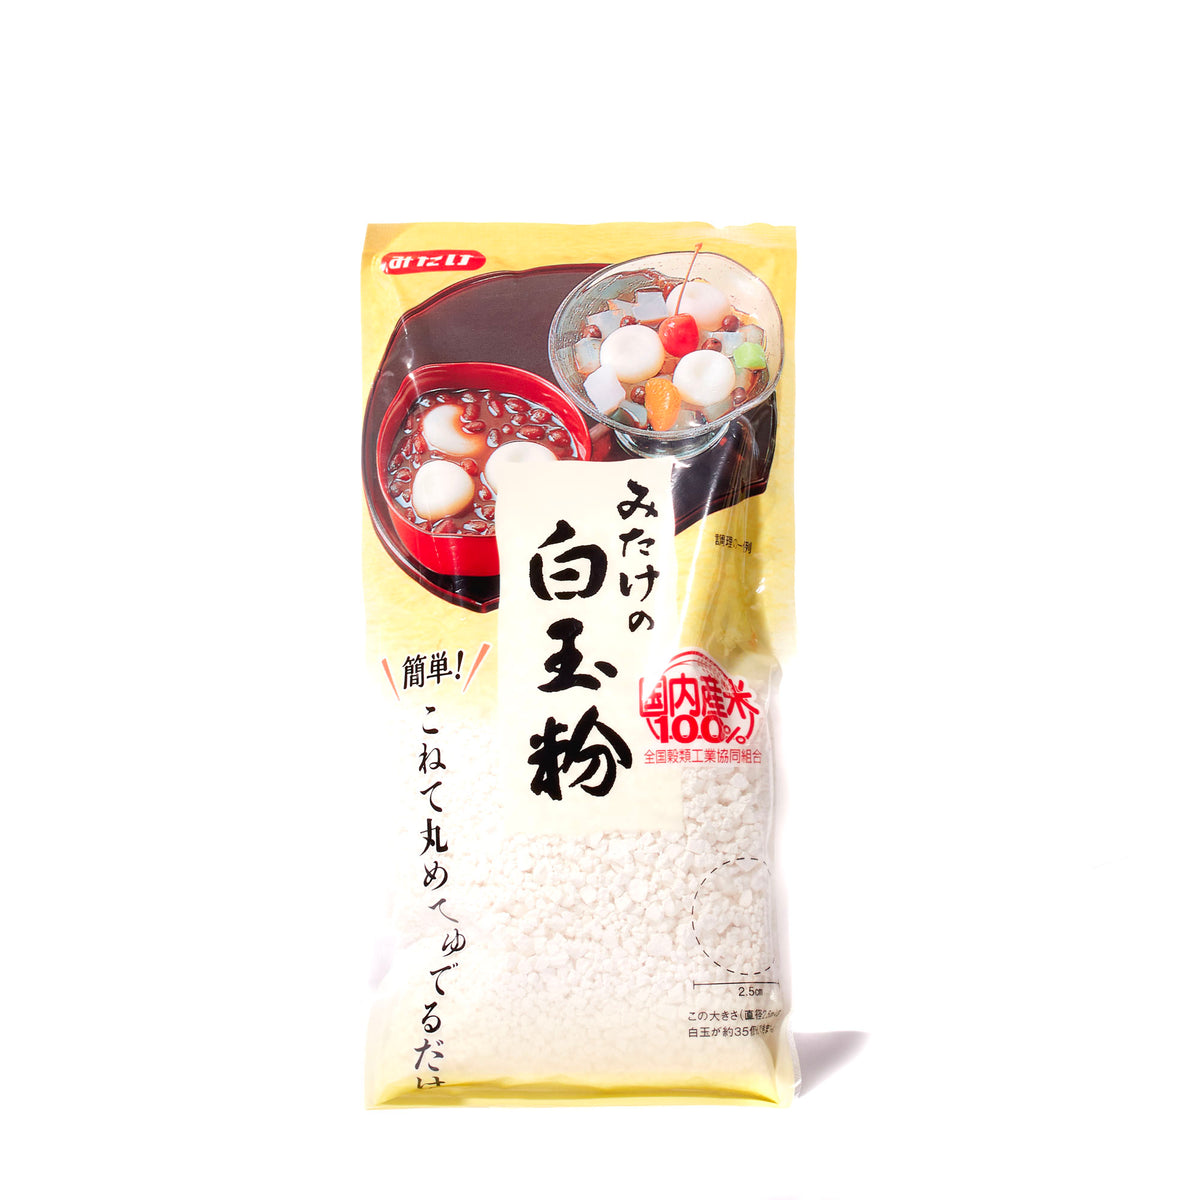 Shiratamako Sweet Rice Flour